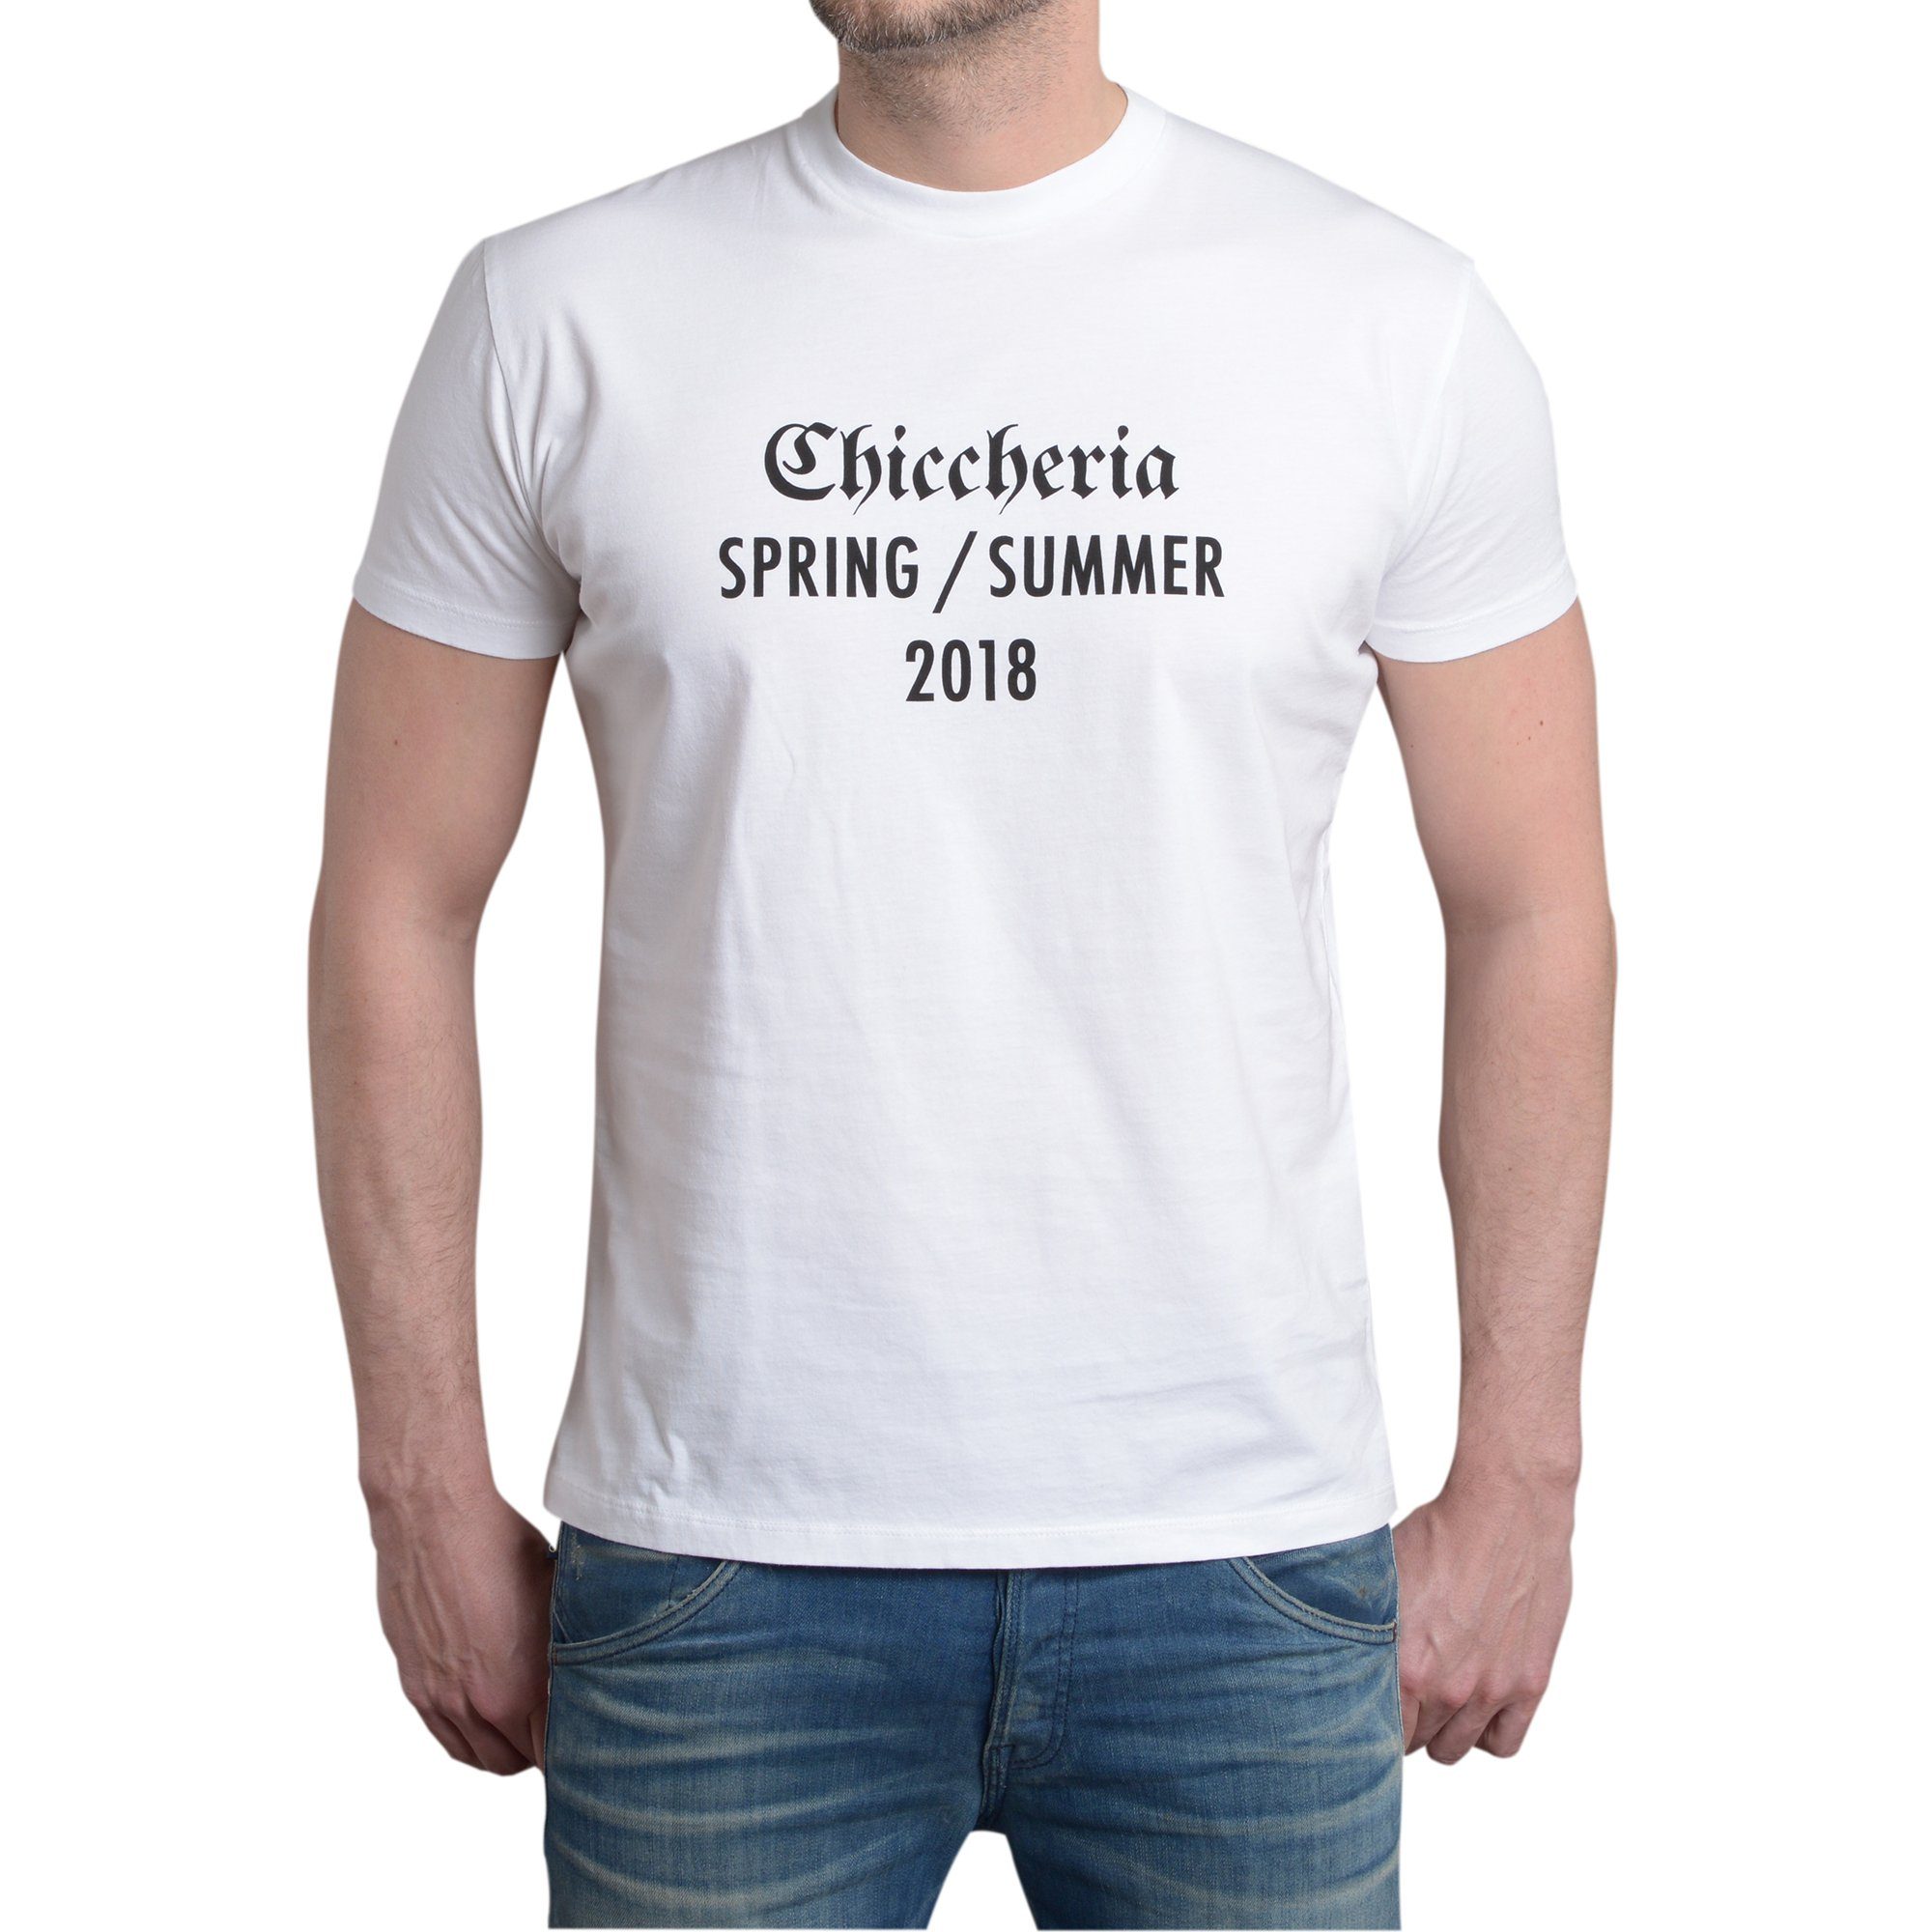 Chiccheria Brand T-Shirt Spring / Summer 2018 Weiß